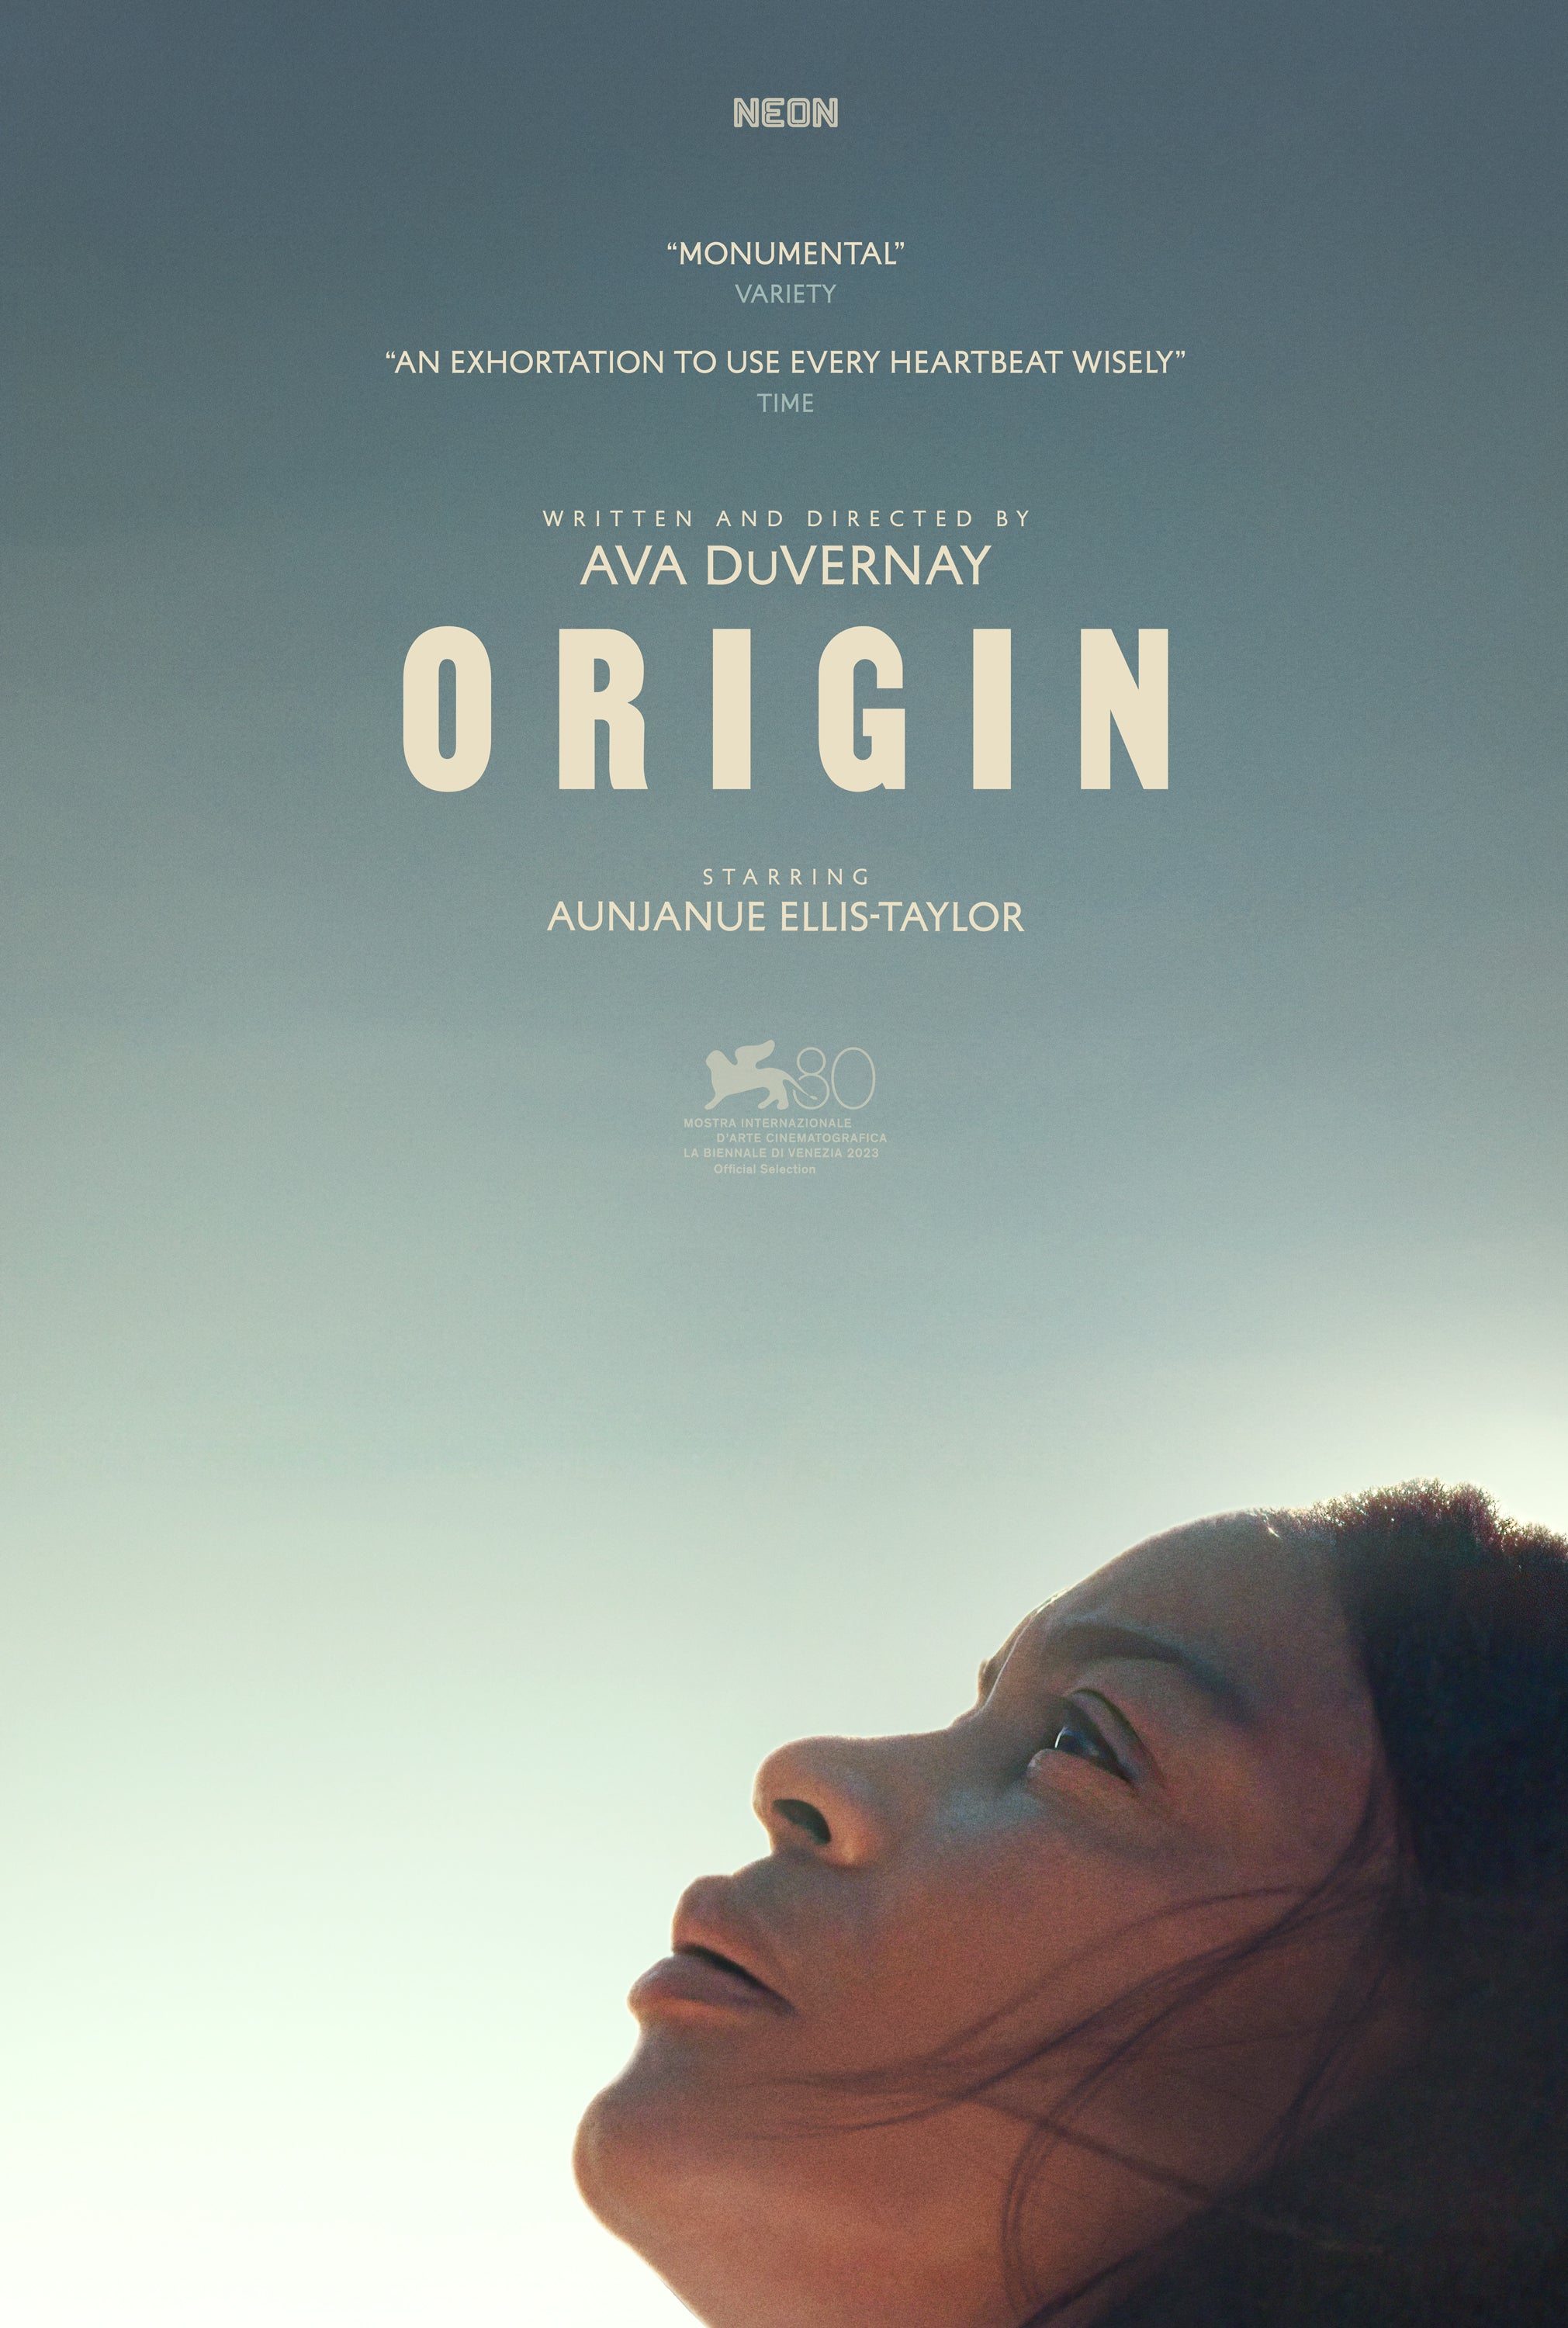 Ava DuVernay new film - “Origin”